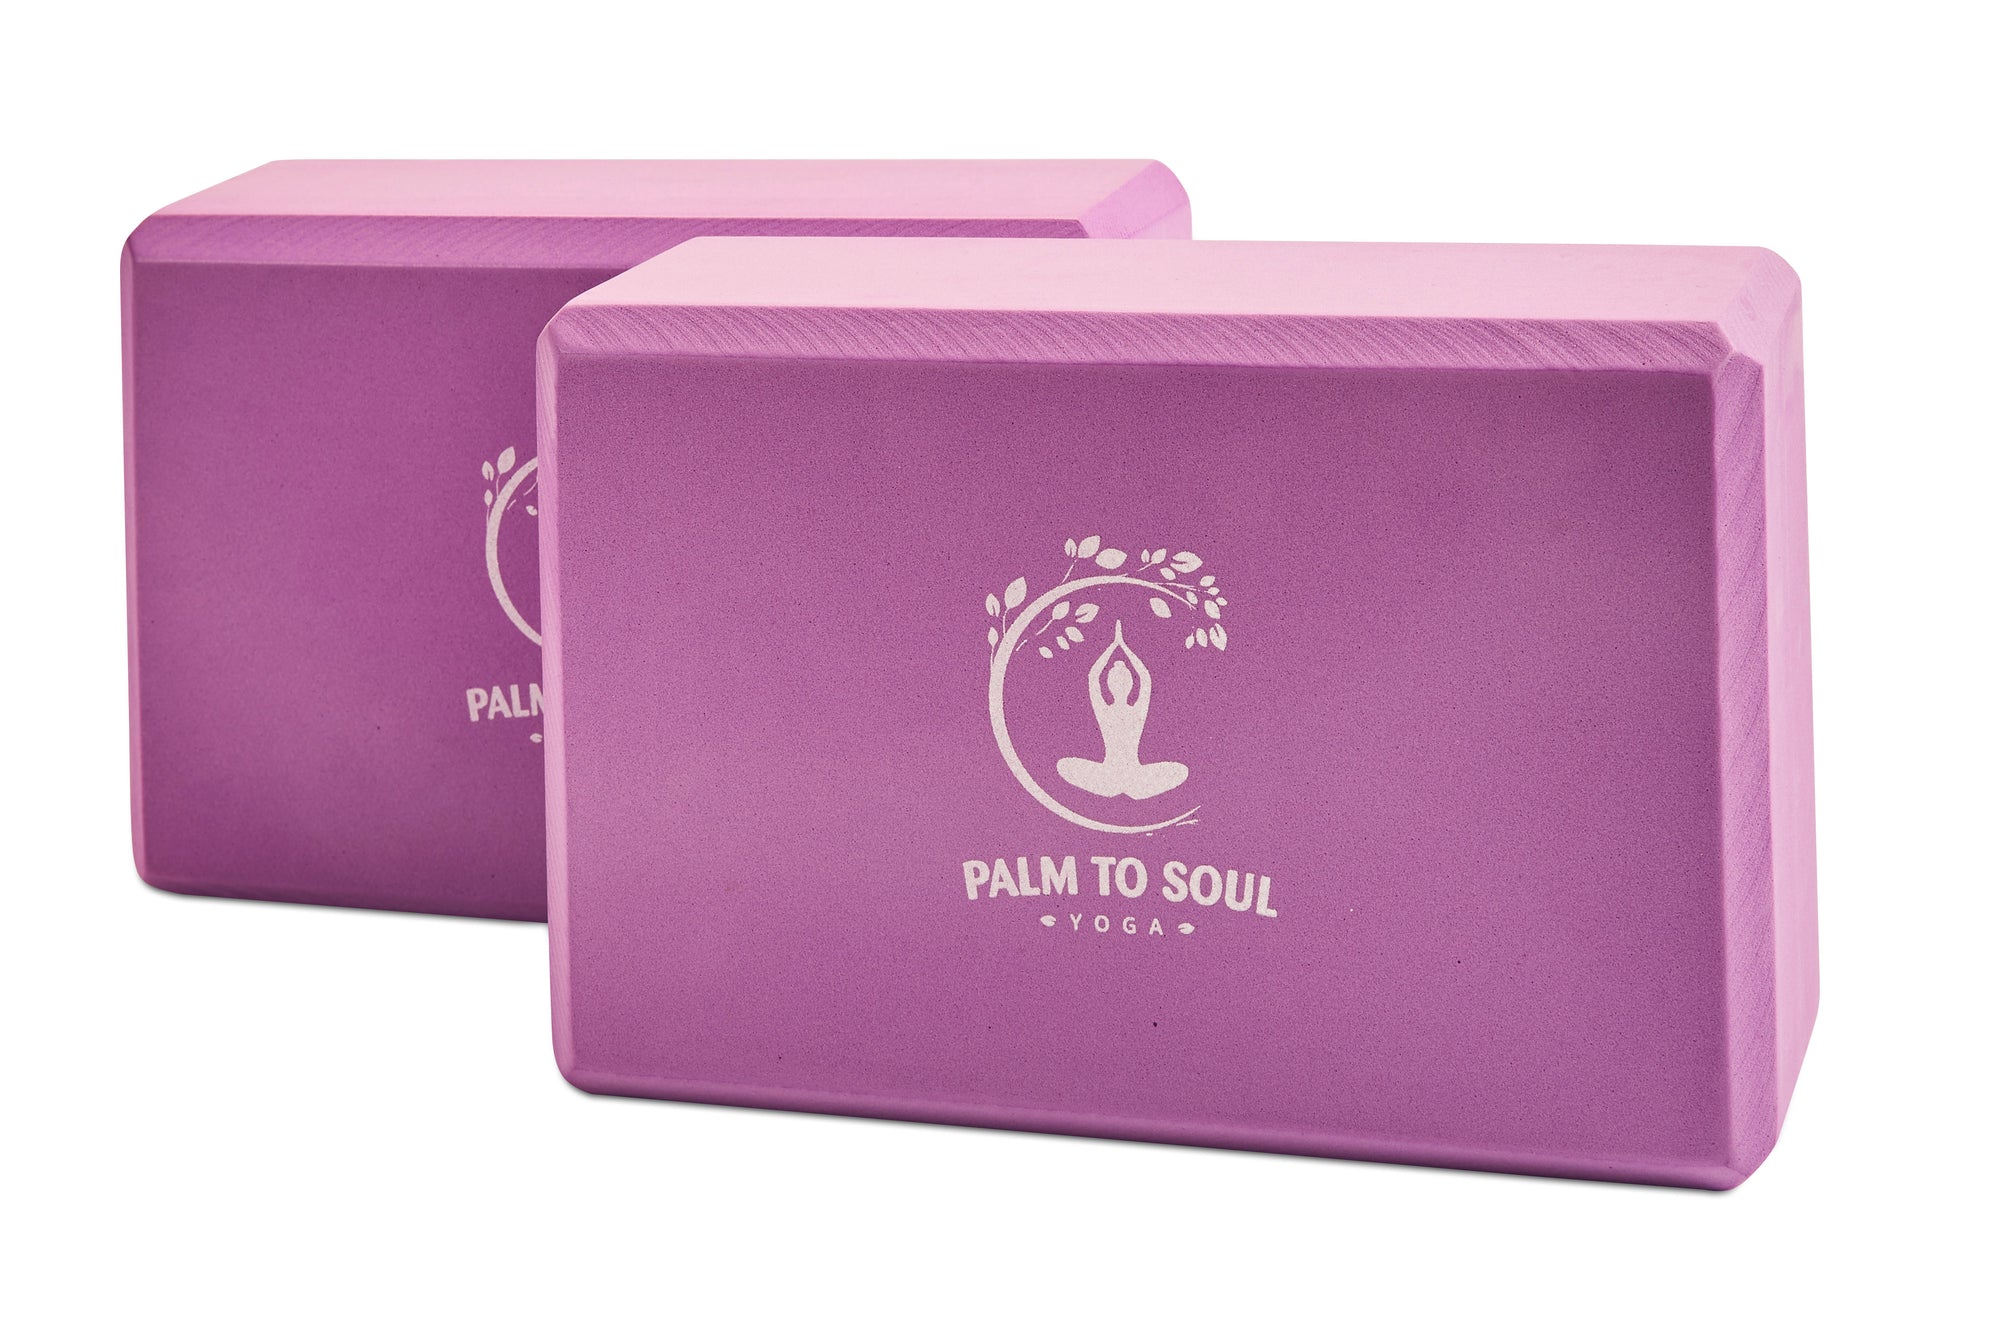 Yoga blocks (pair/set of 2) purple